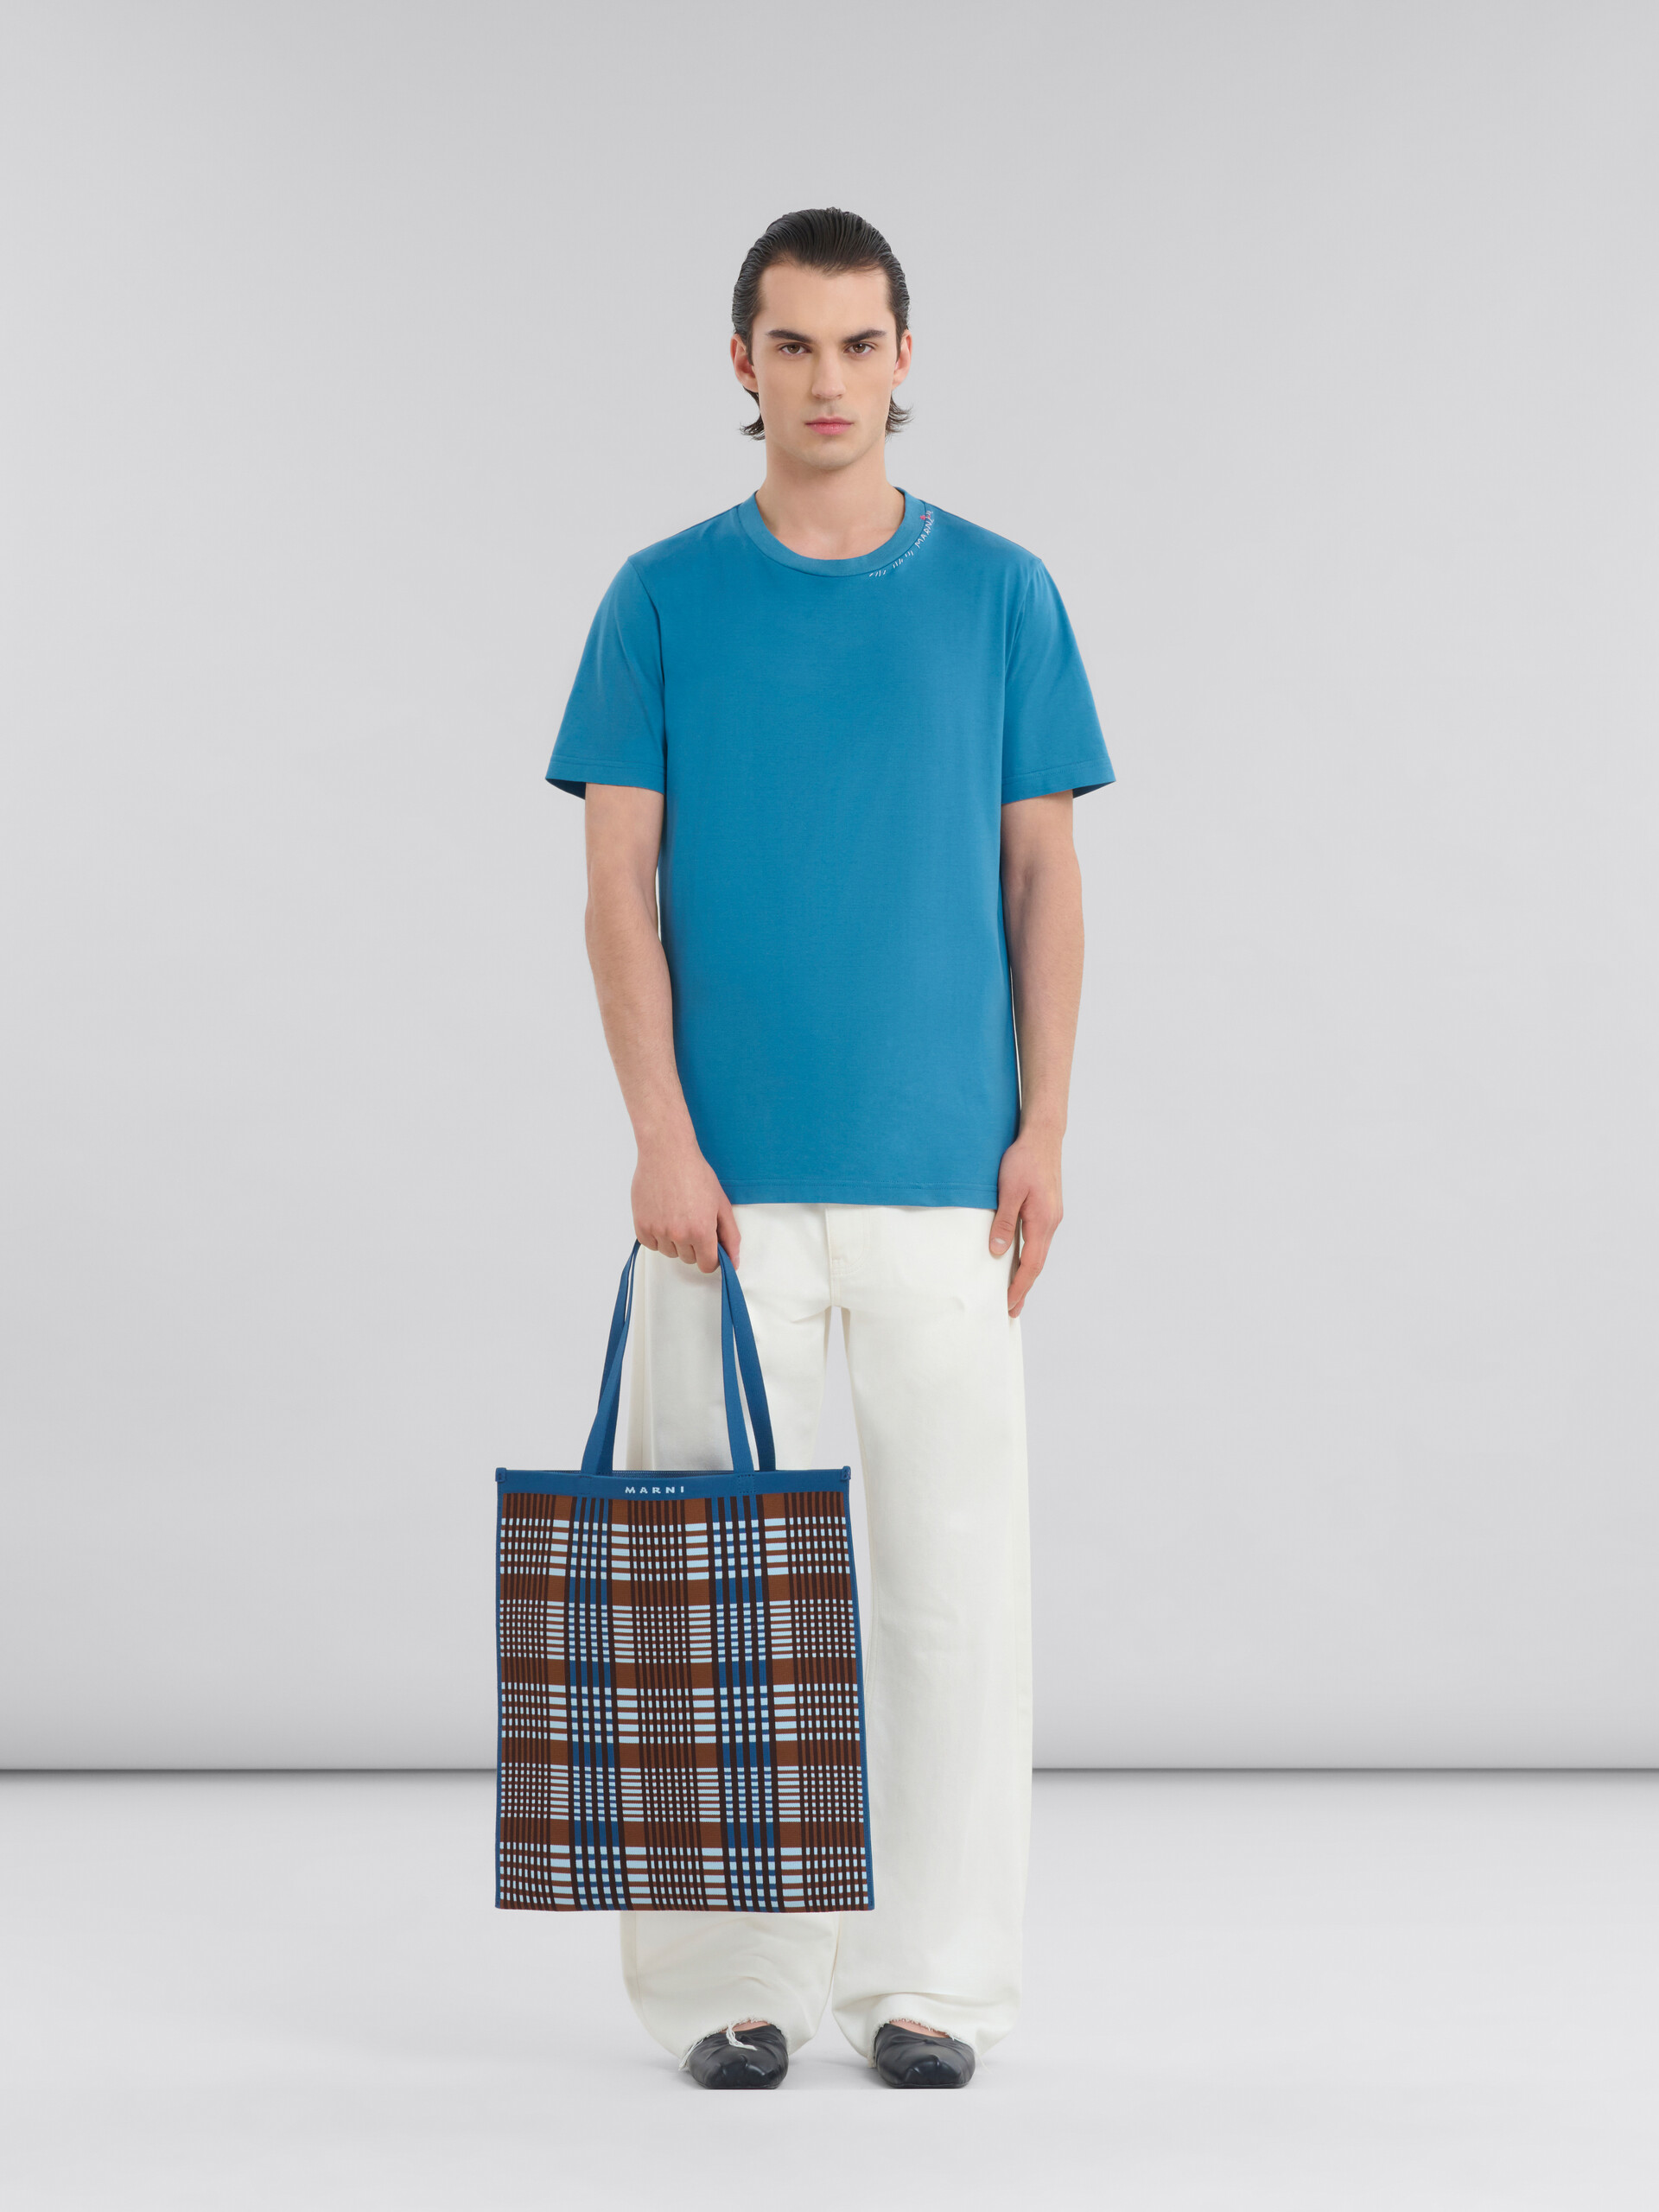 Bolso tote plano de jacquard a cuadros azules y marrones - Bolsos shopper - Image 2